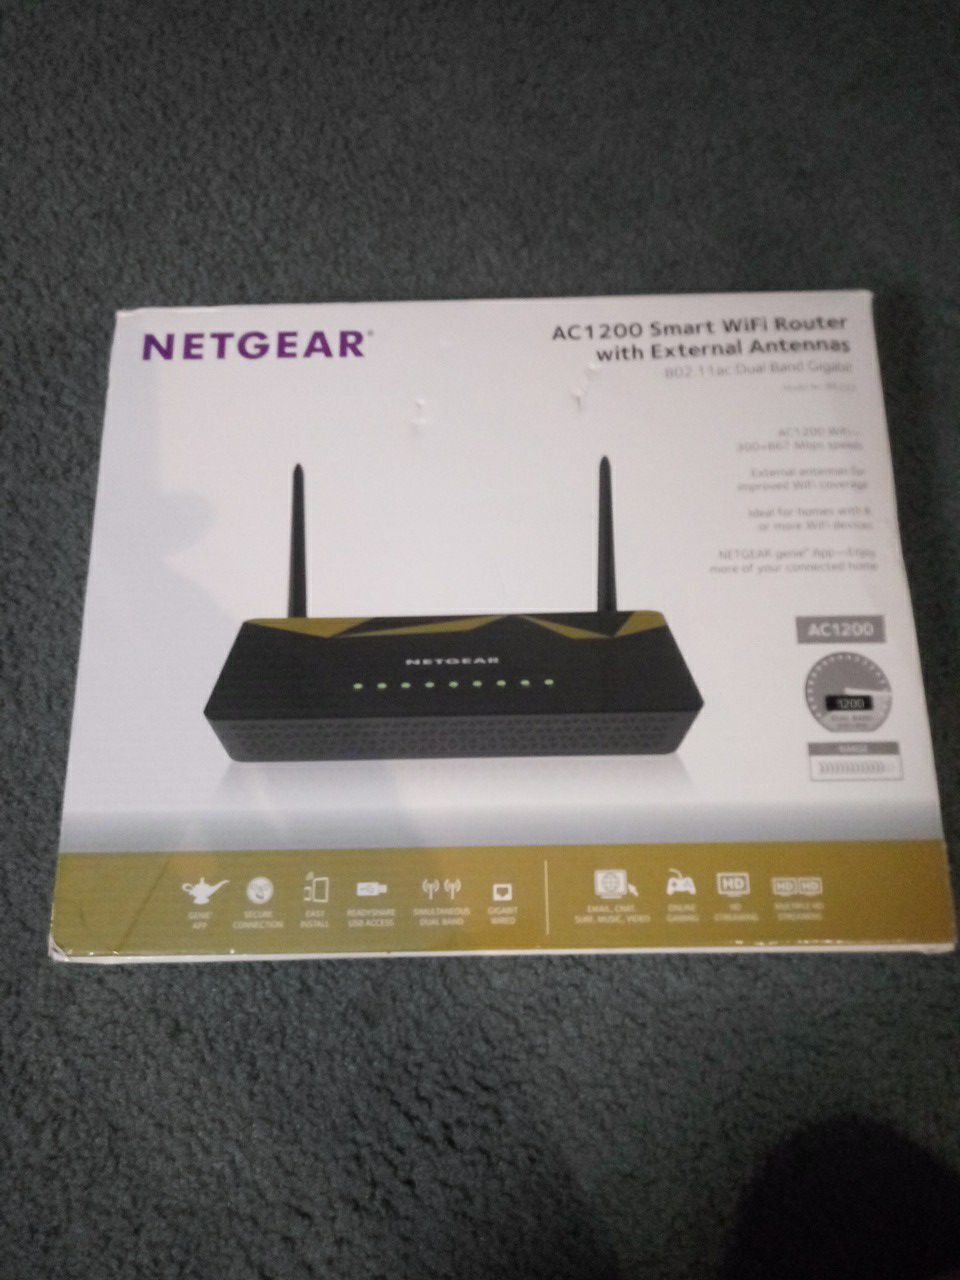 Netgear AC1200 Smart Wifi Router with external antennas